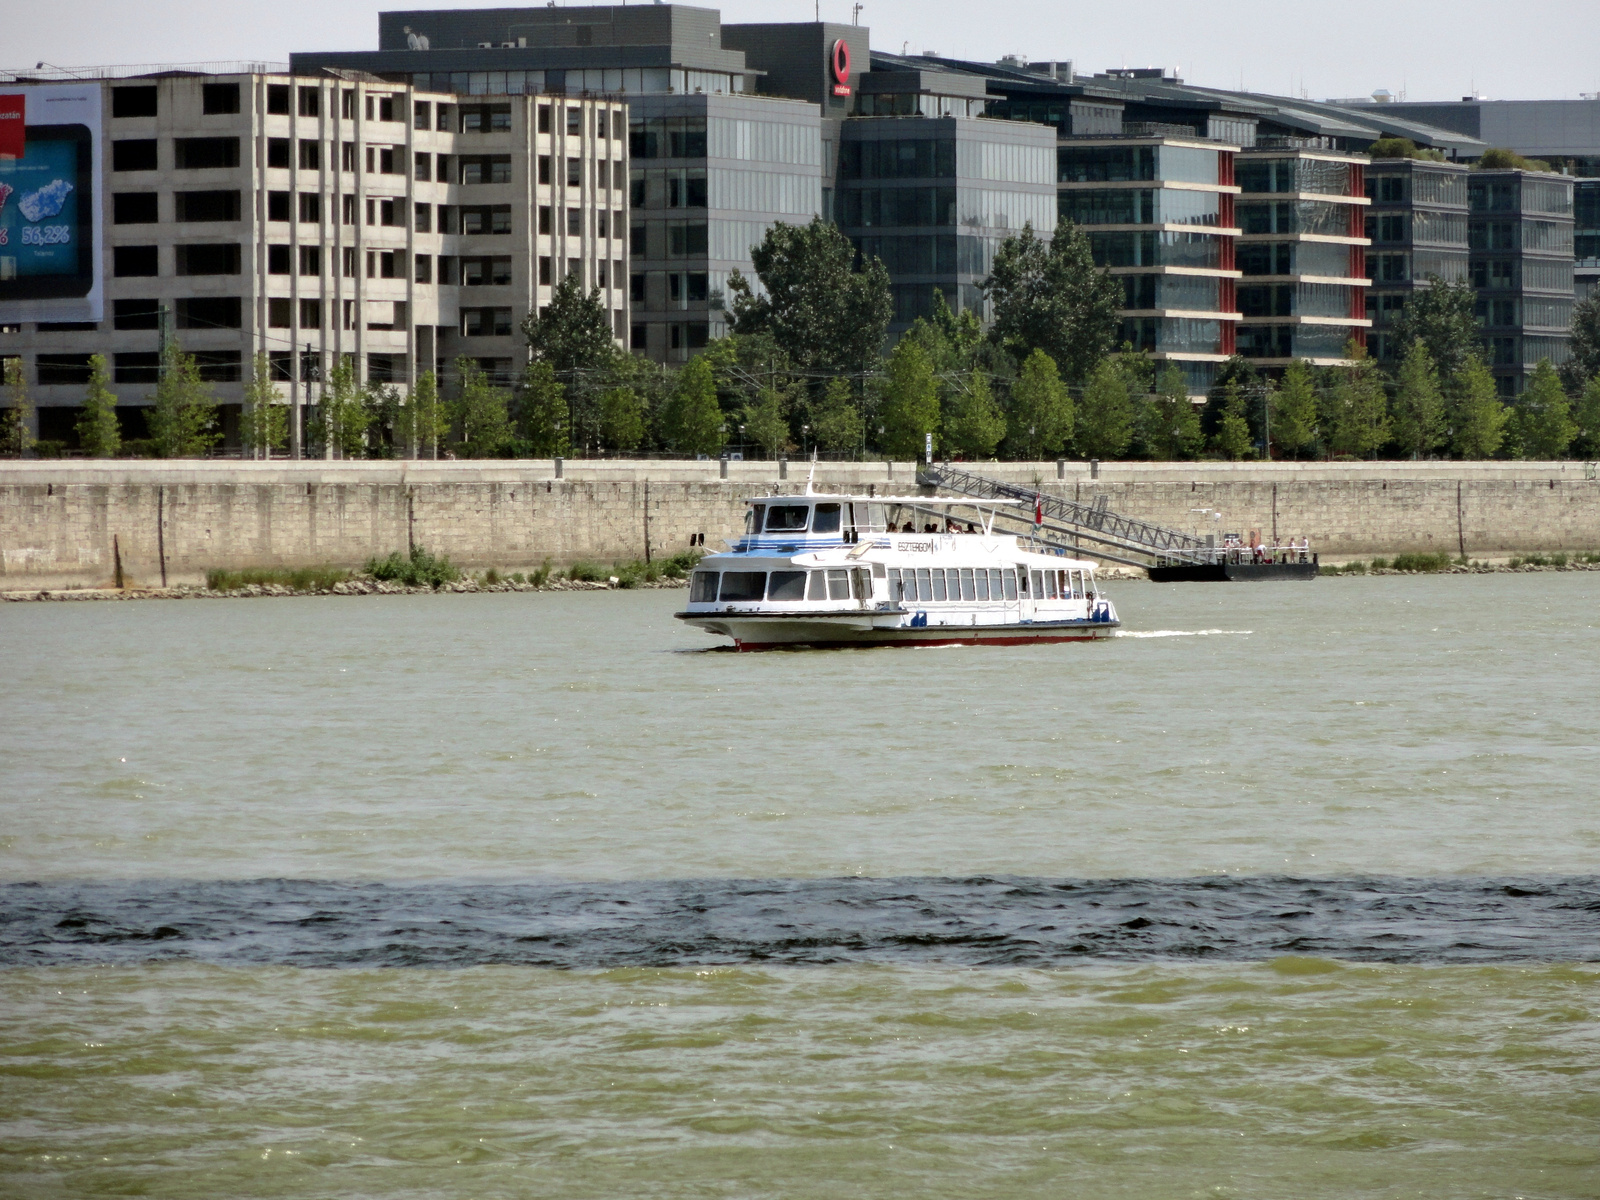 Millenium-hajó-Duna részlet